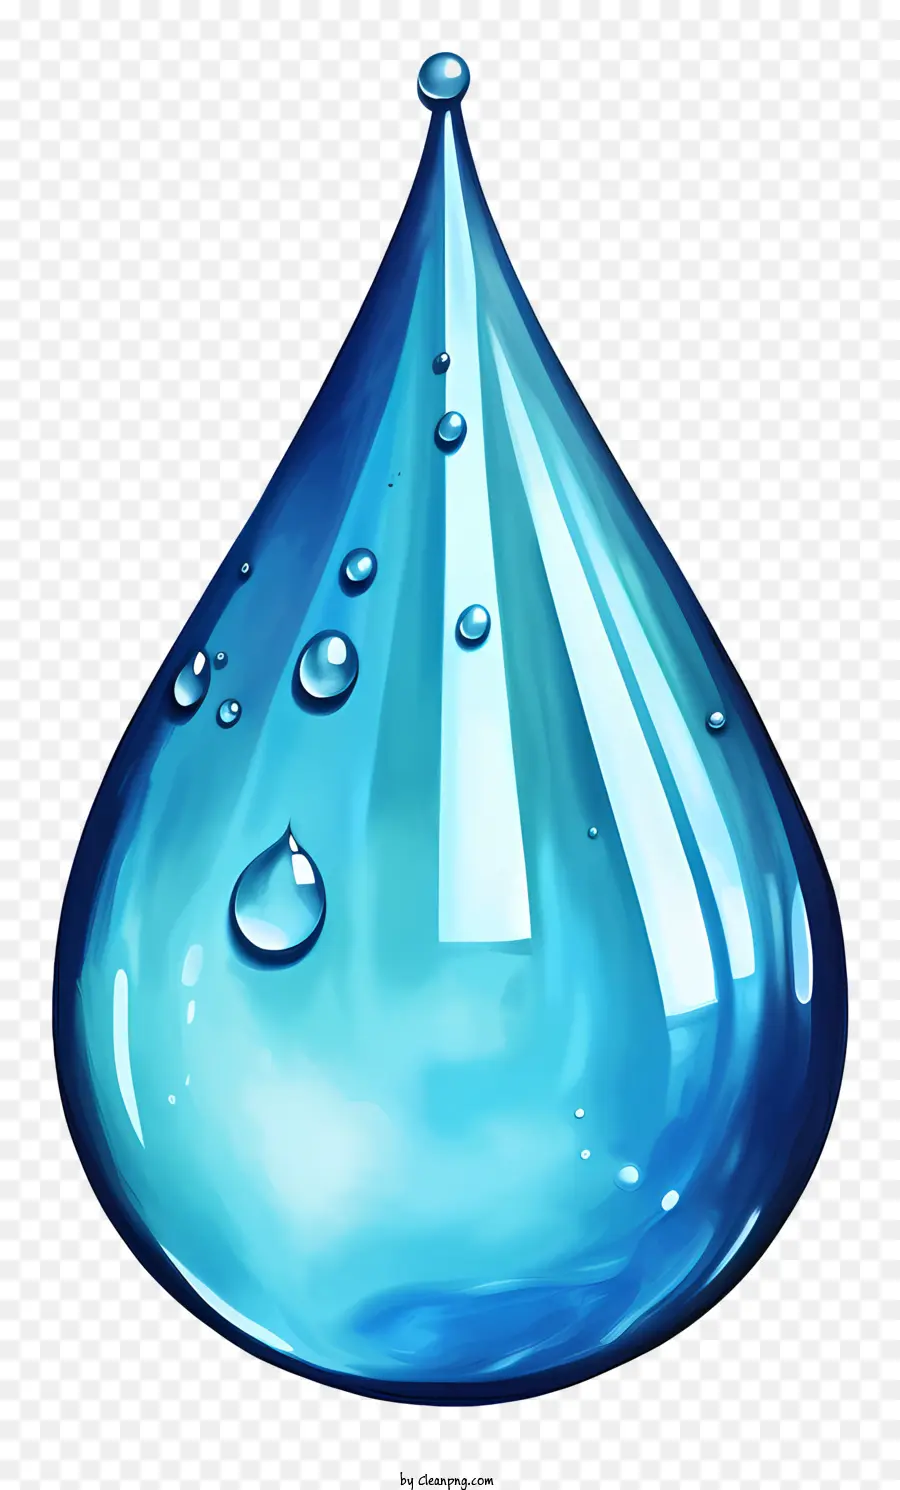 giọt nước - Một giọt nước trong suốt từ từ lây lan xuống